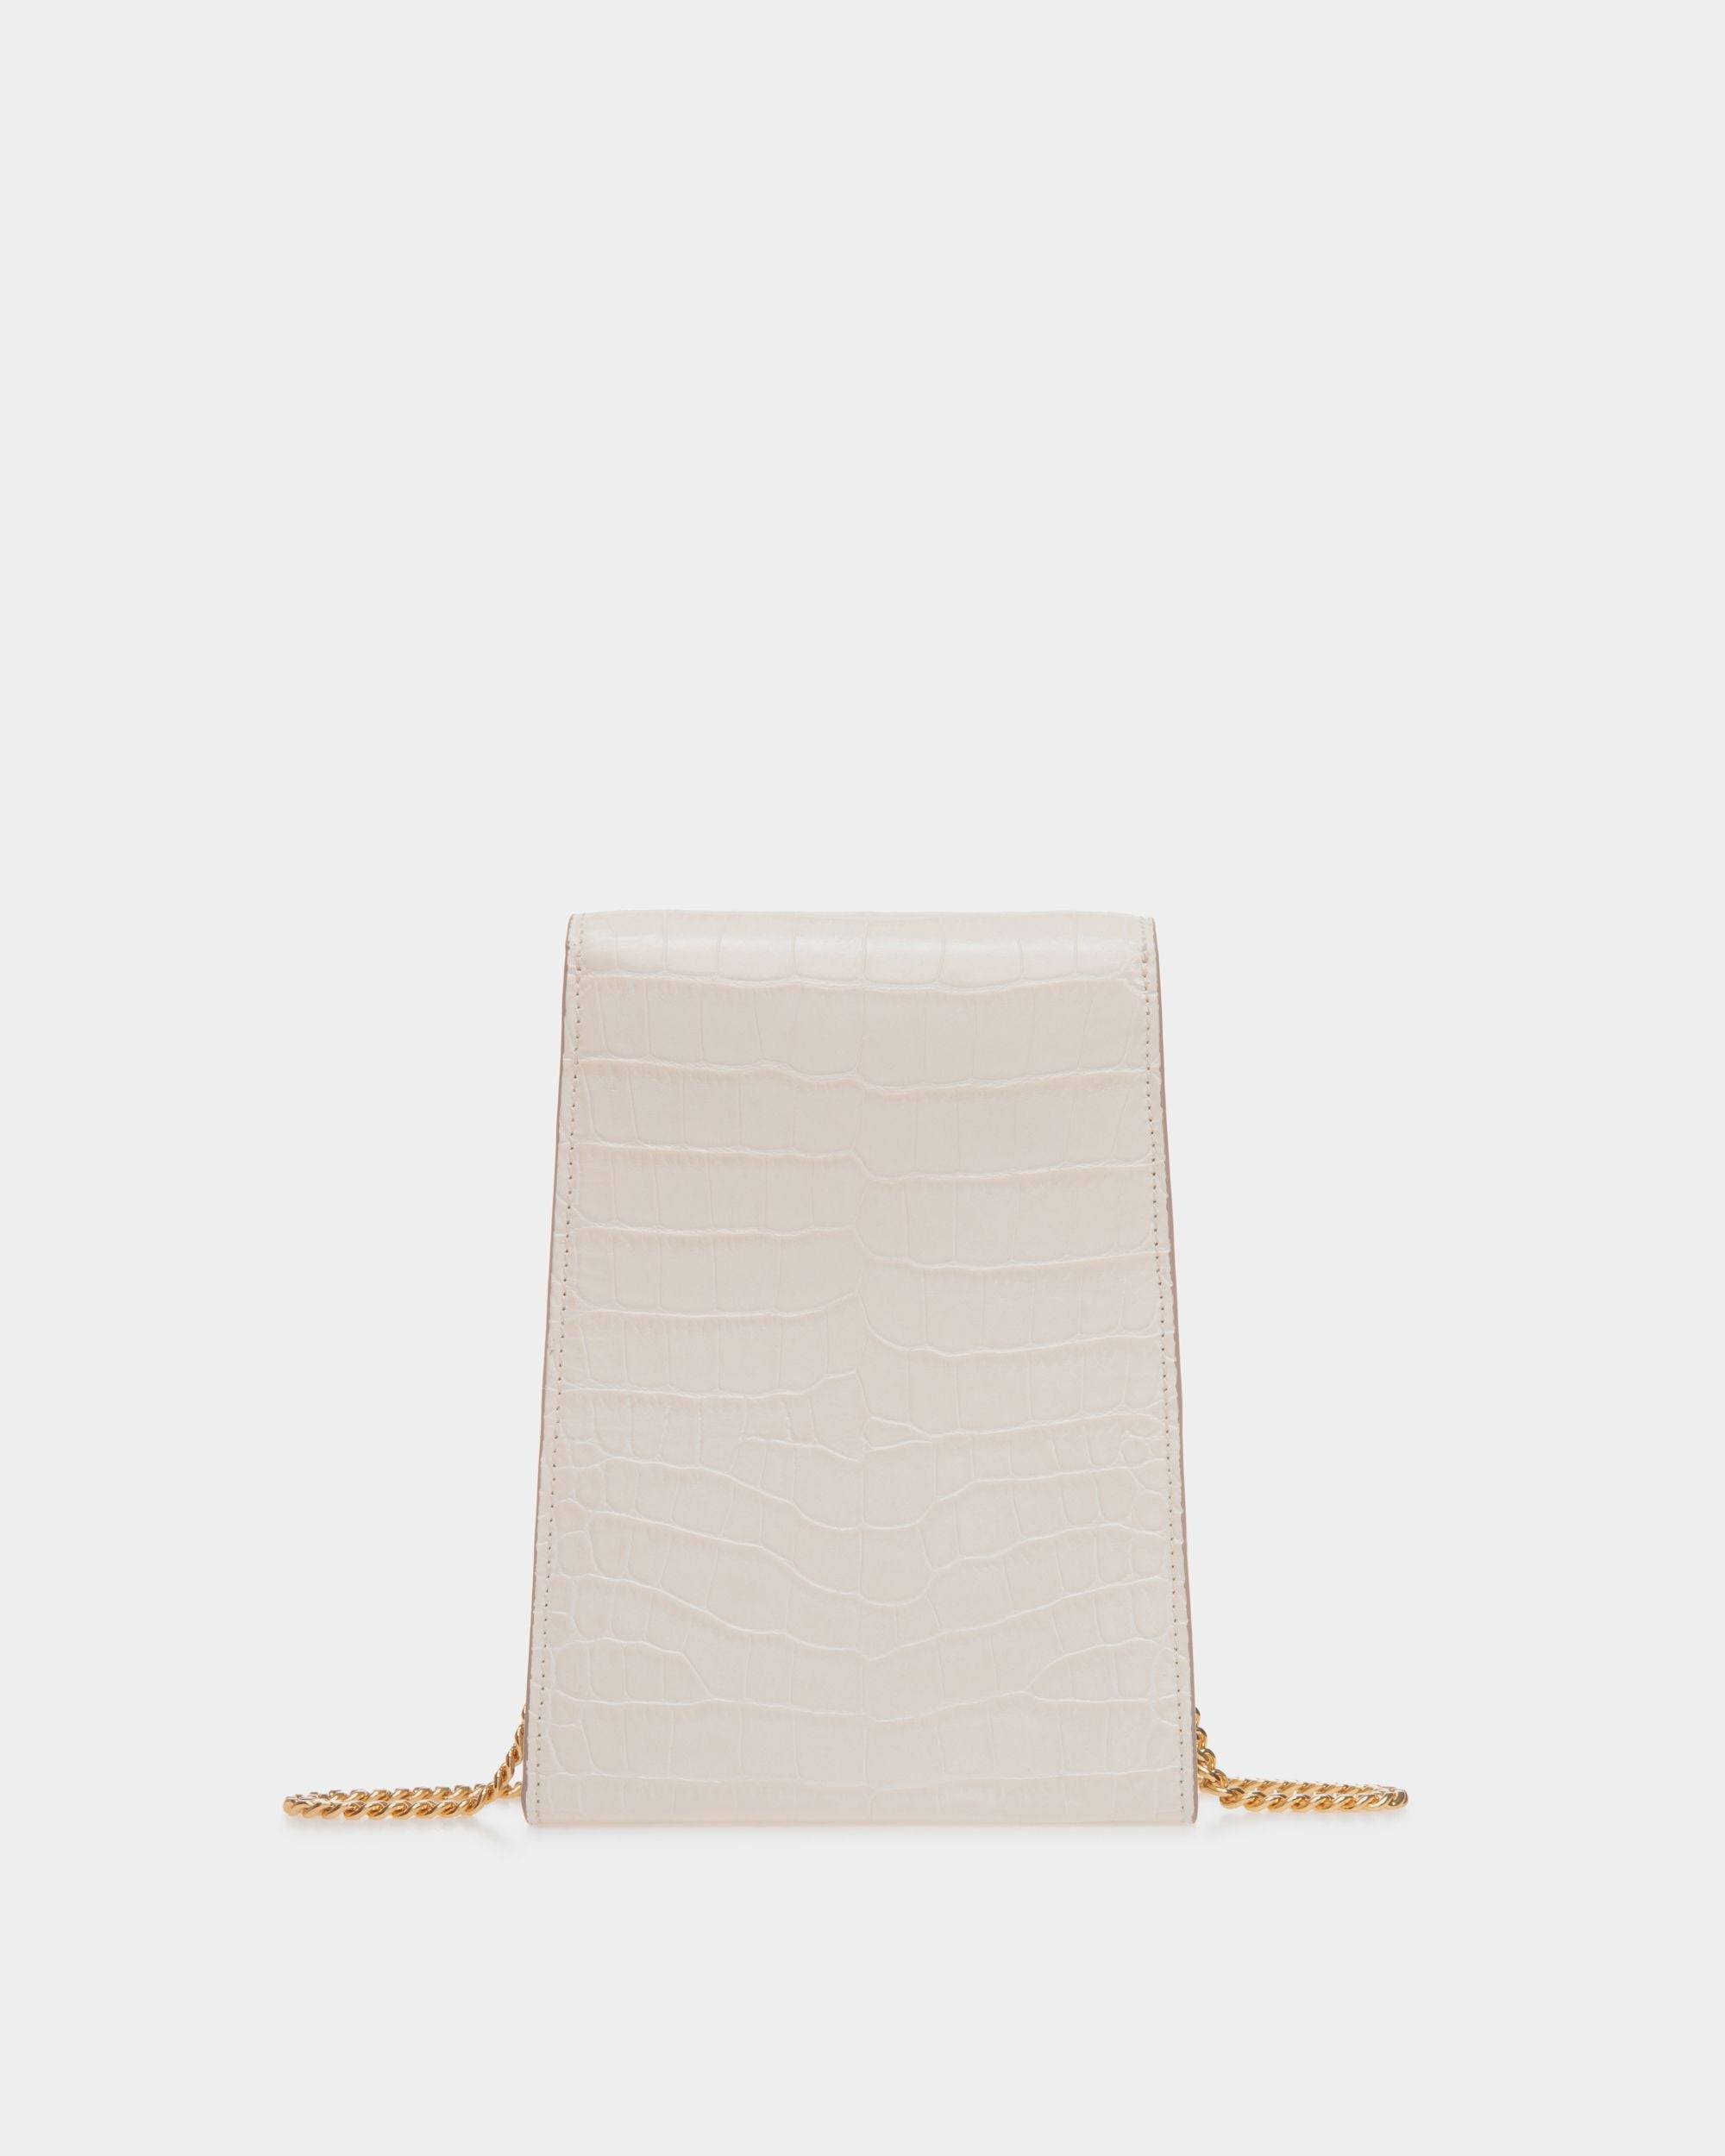 Tilt | Women's Phone Bag in White Crocodile Print Leather | Bally | Still Life Back